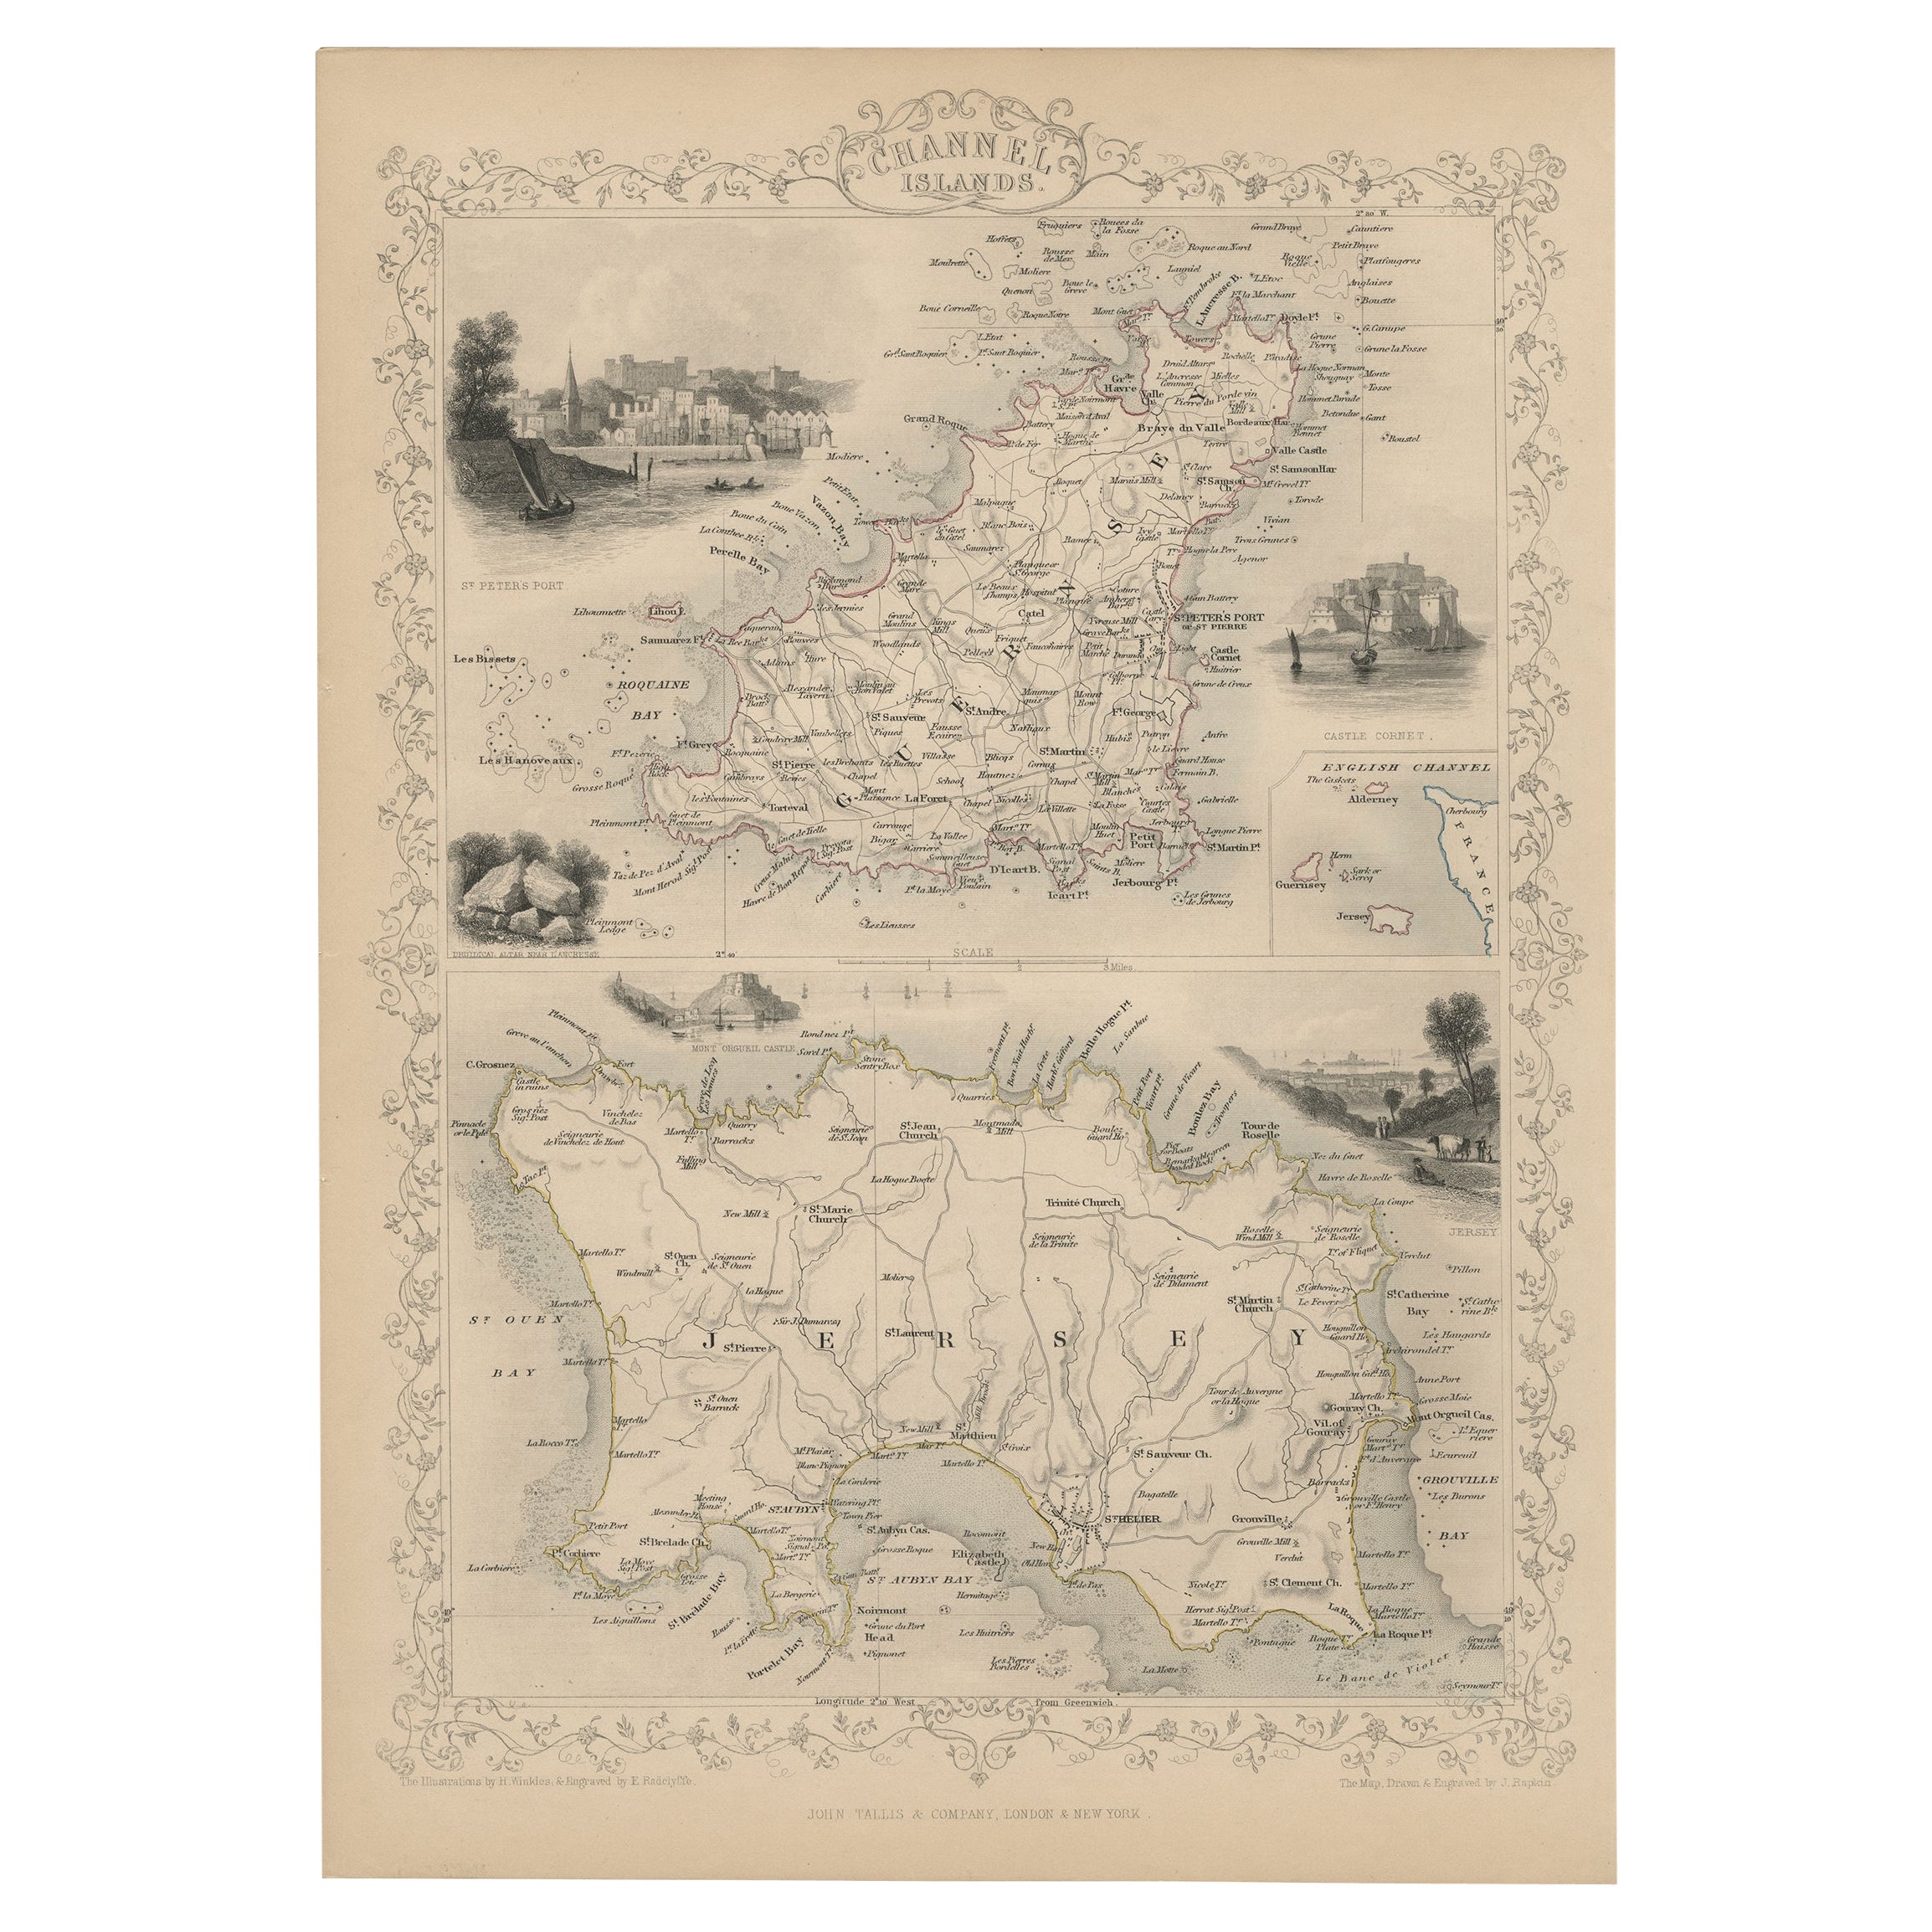 Original Antique Map of the Channel Islands, Incl. Decorative Vignettes, 1851